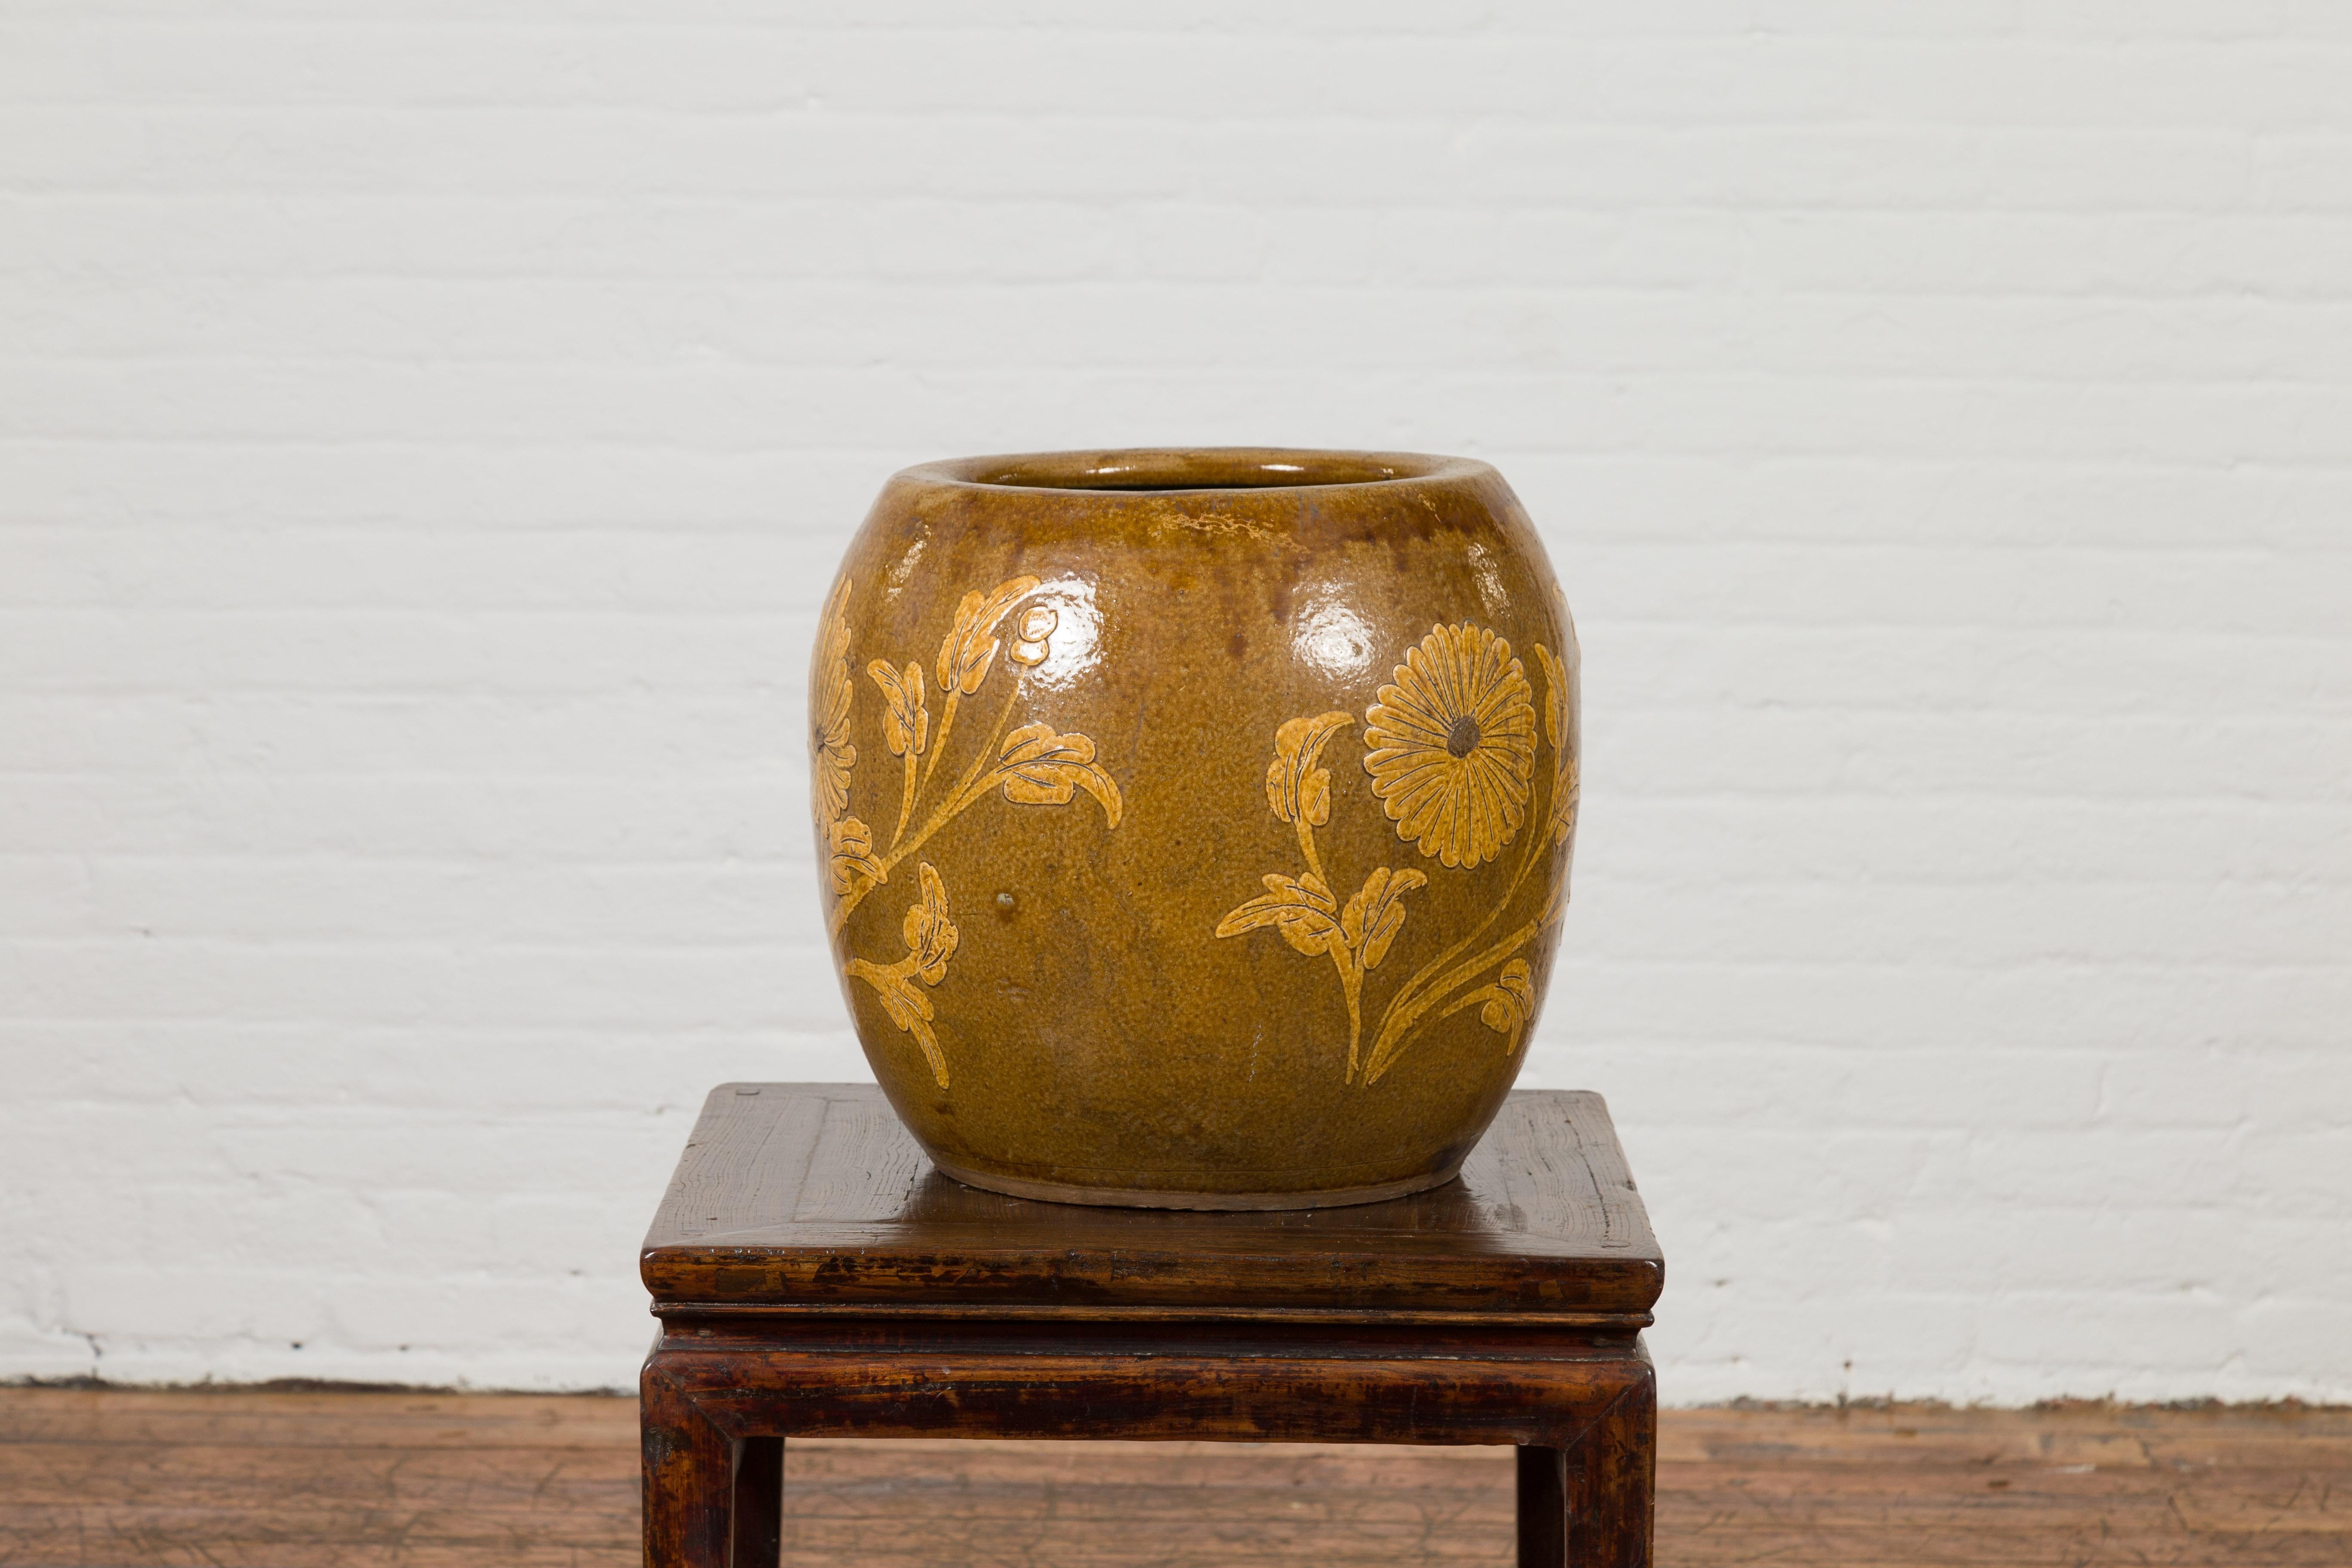 Antique Thai Glazed Ceramic Brown Round Planter with Golden Floral Motifs 3